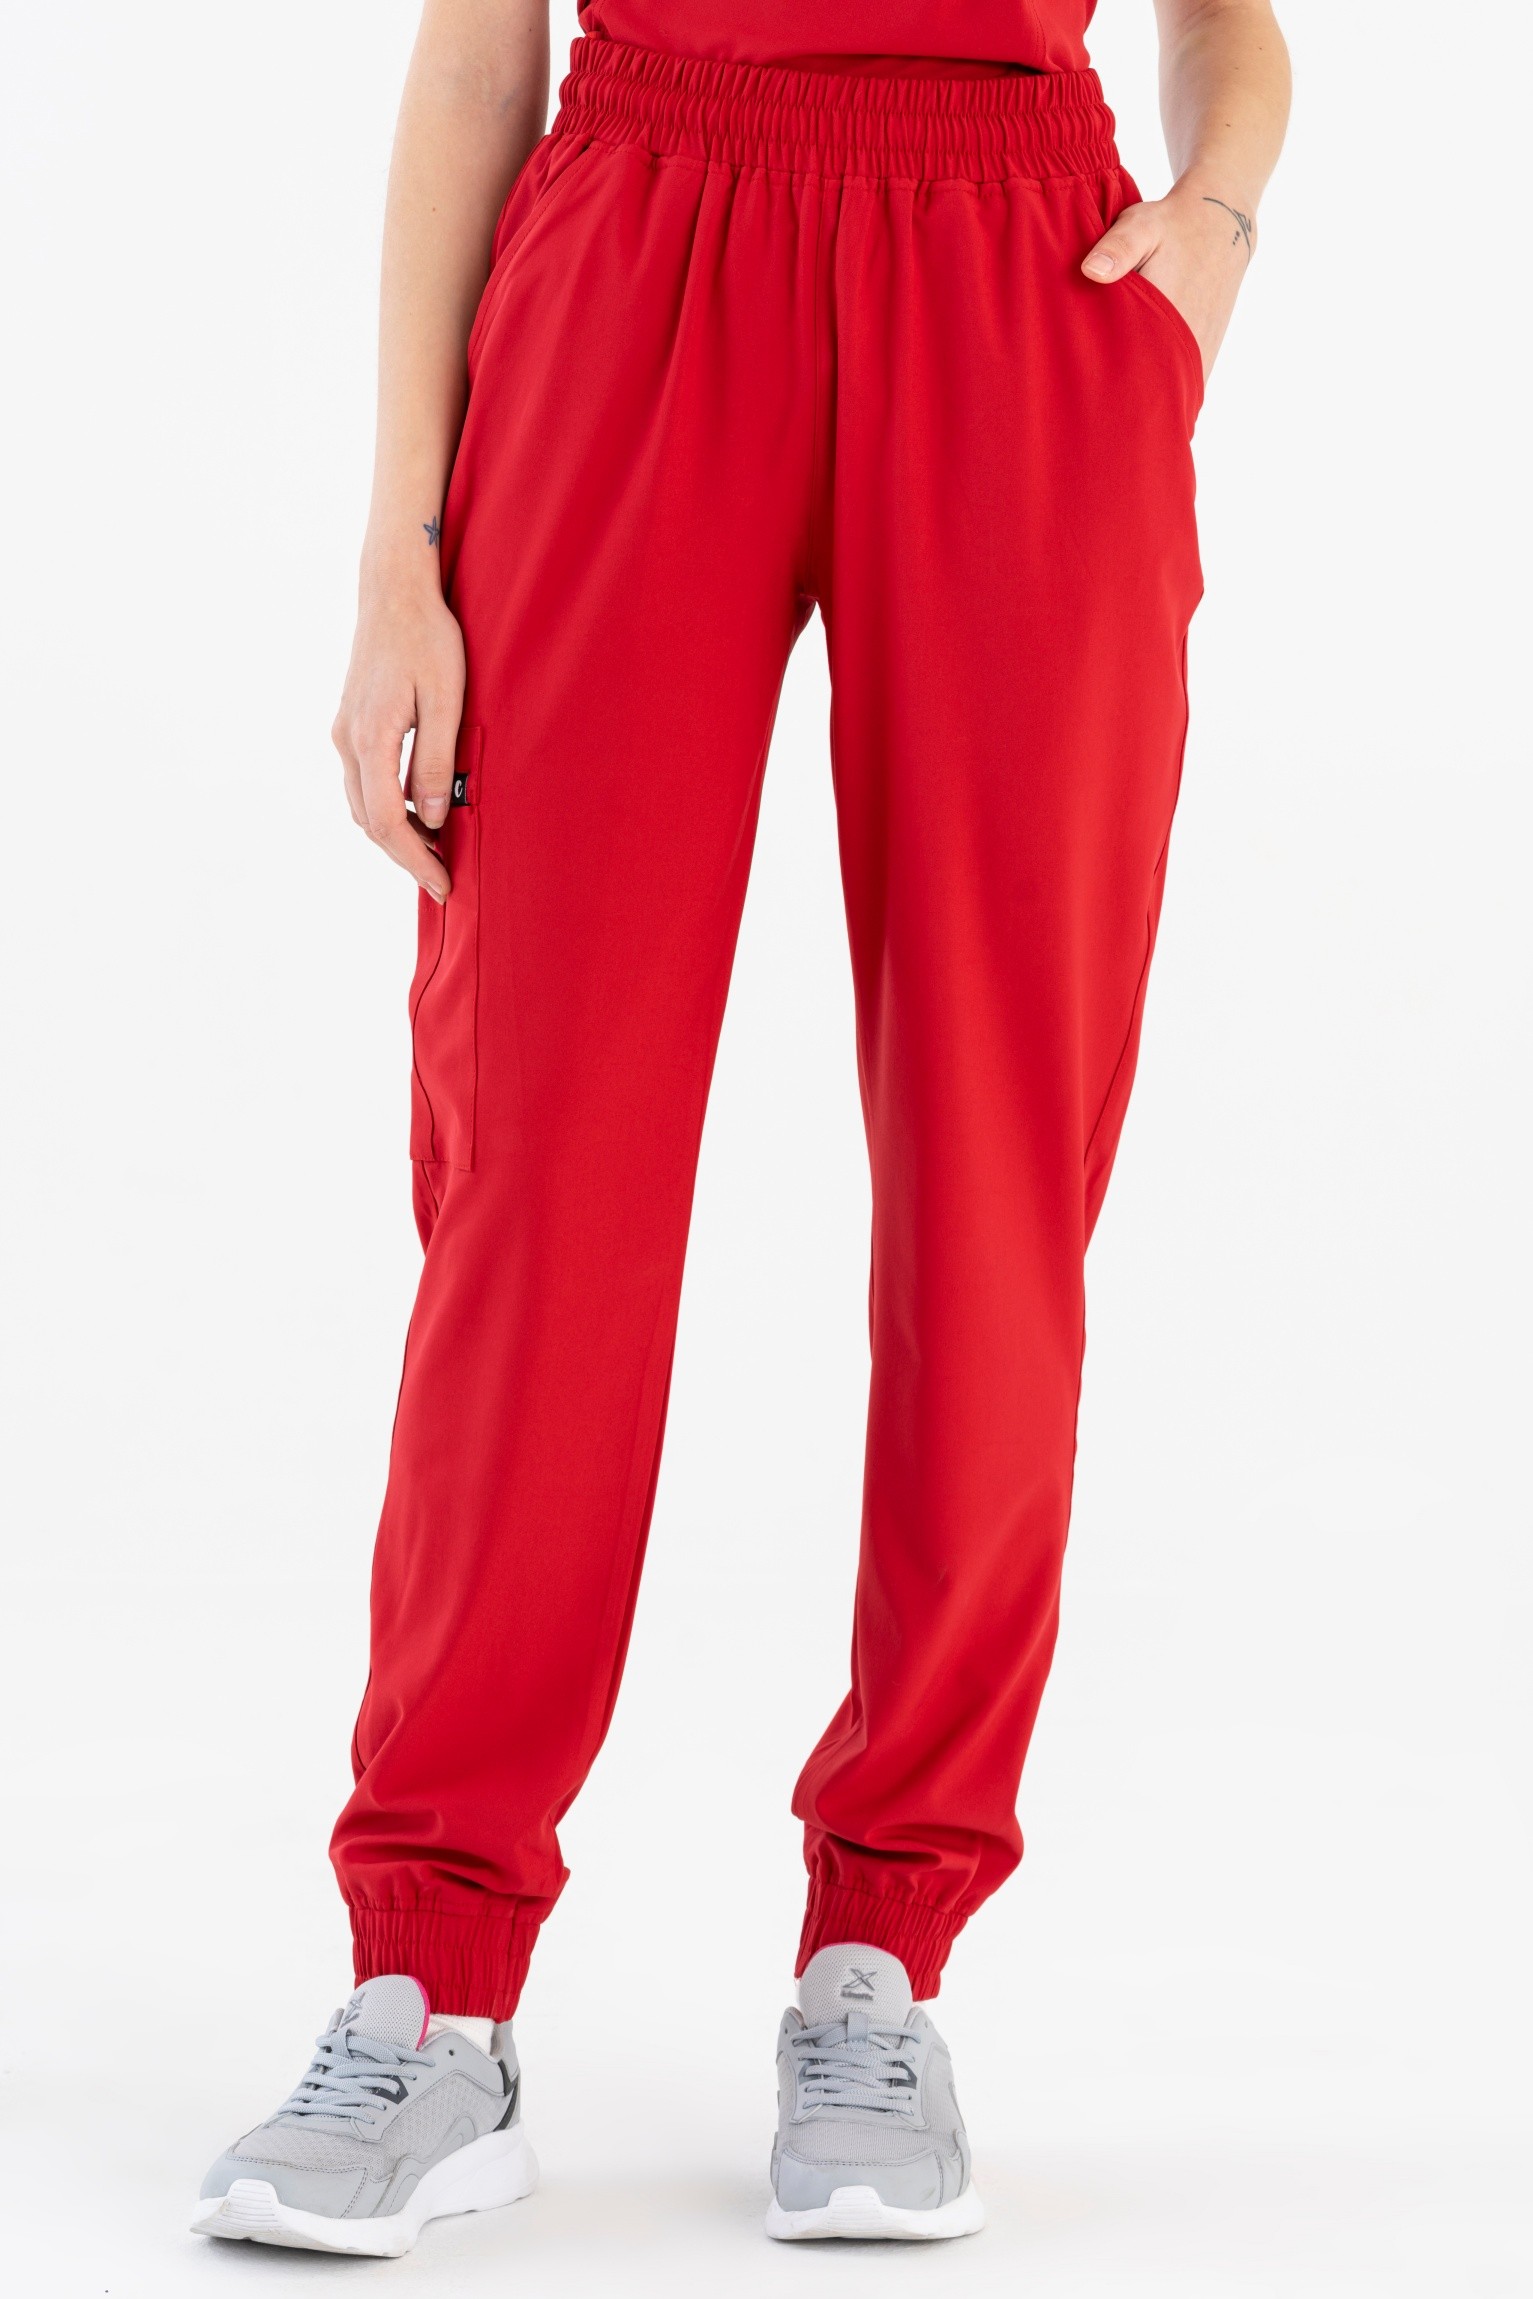 Sierra Kadın Kargo Jogger Pantolon - Kırmızı